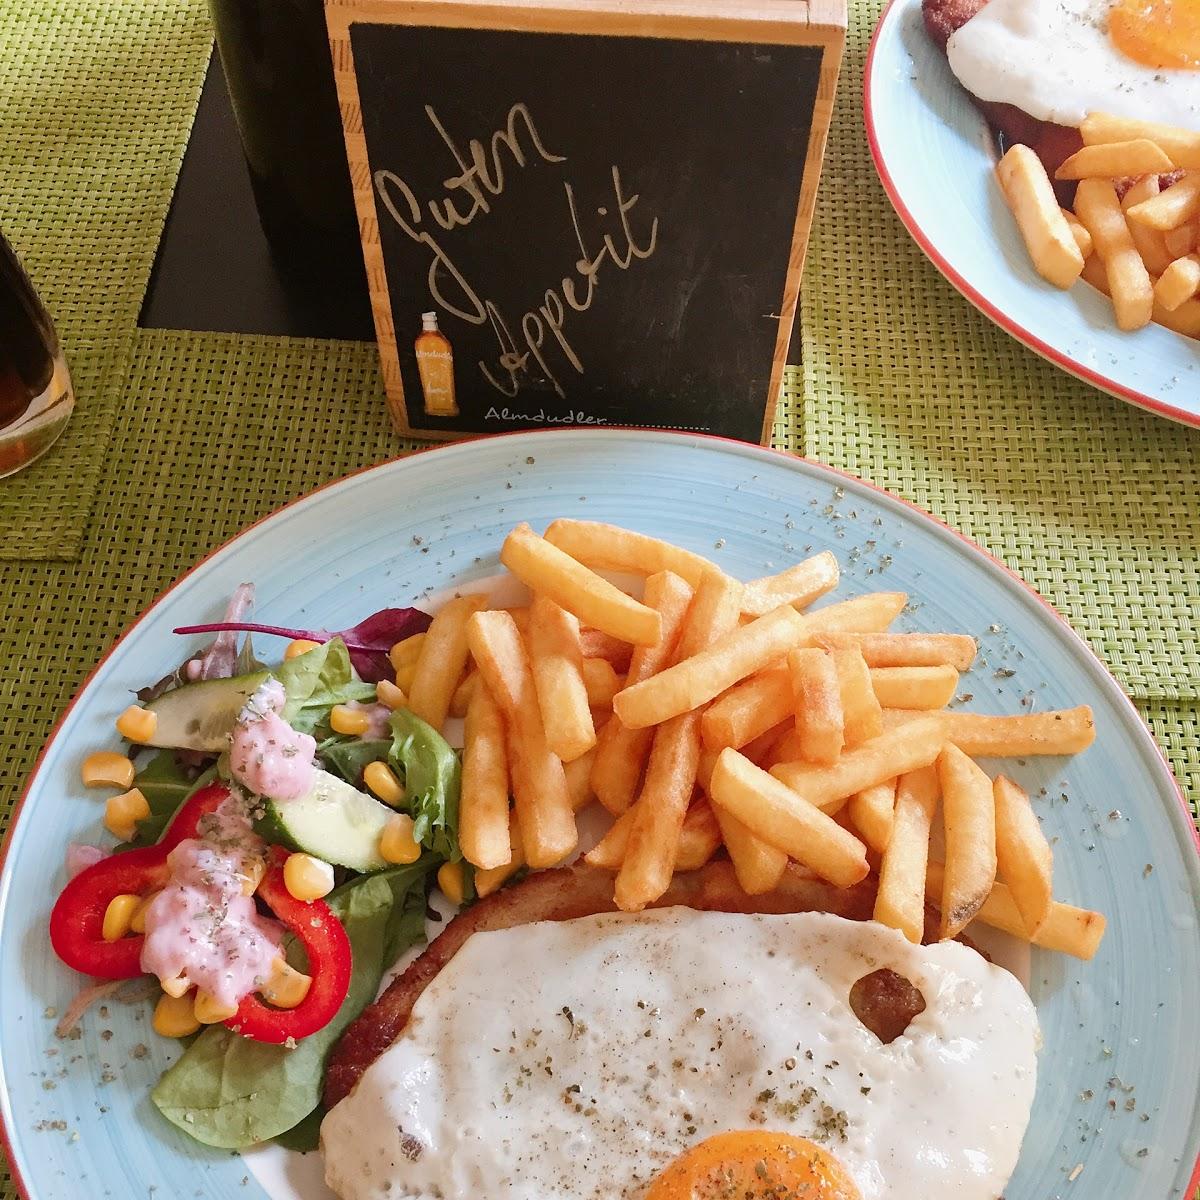 Restaurant "Einfach nur Bloch" in Berlin